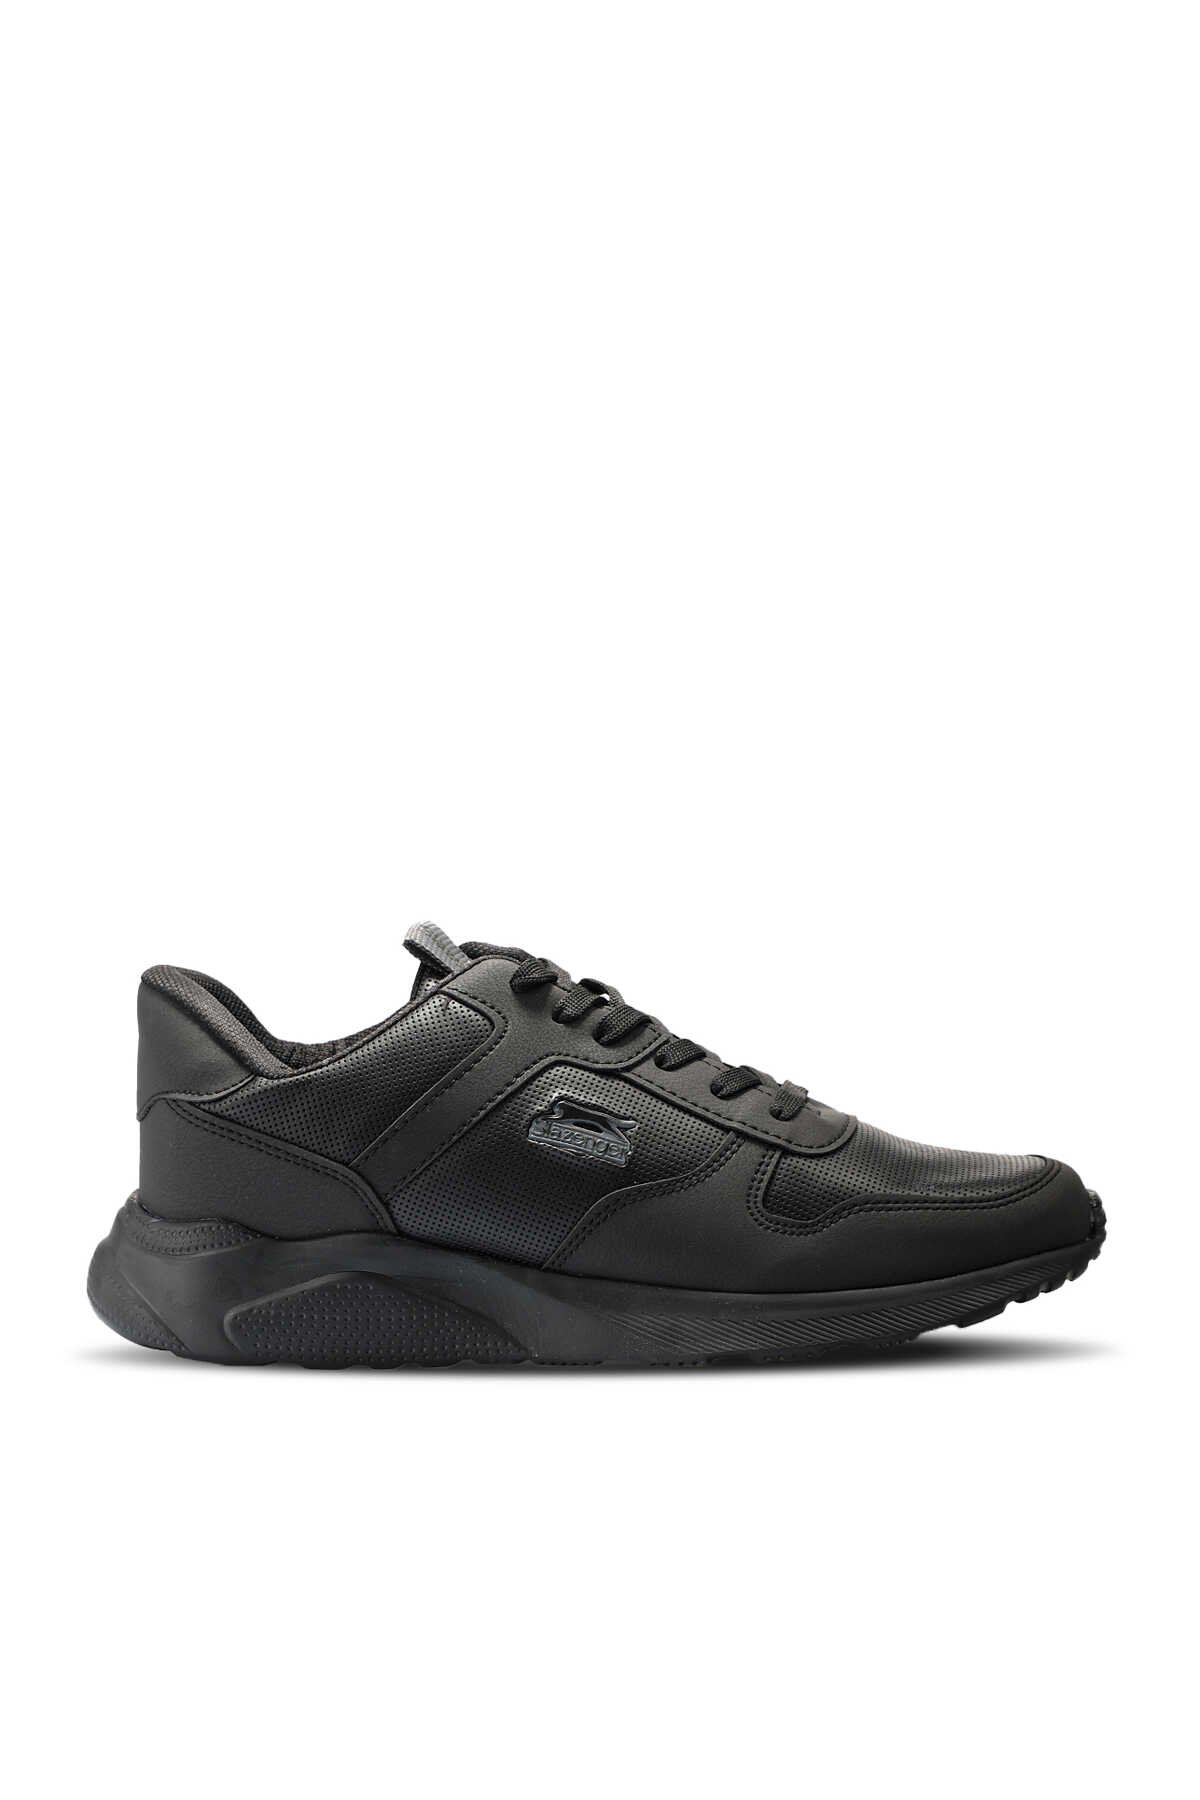 Slazenger - Slazenger ENRICA Sneaker Kadın Ayakkabı Siyah / Siyah